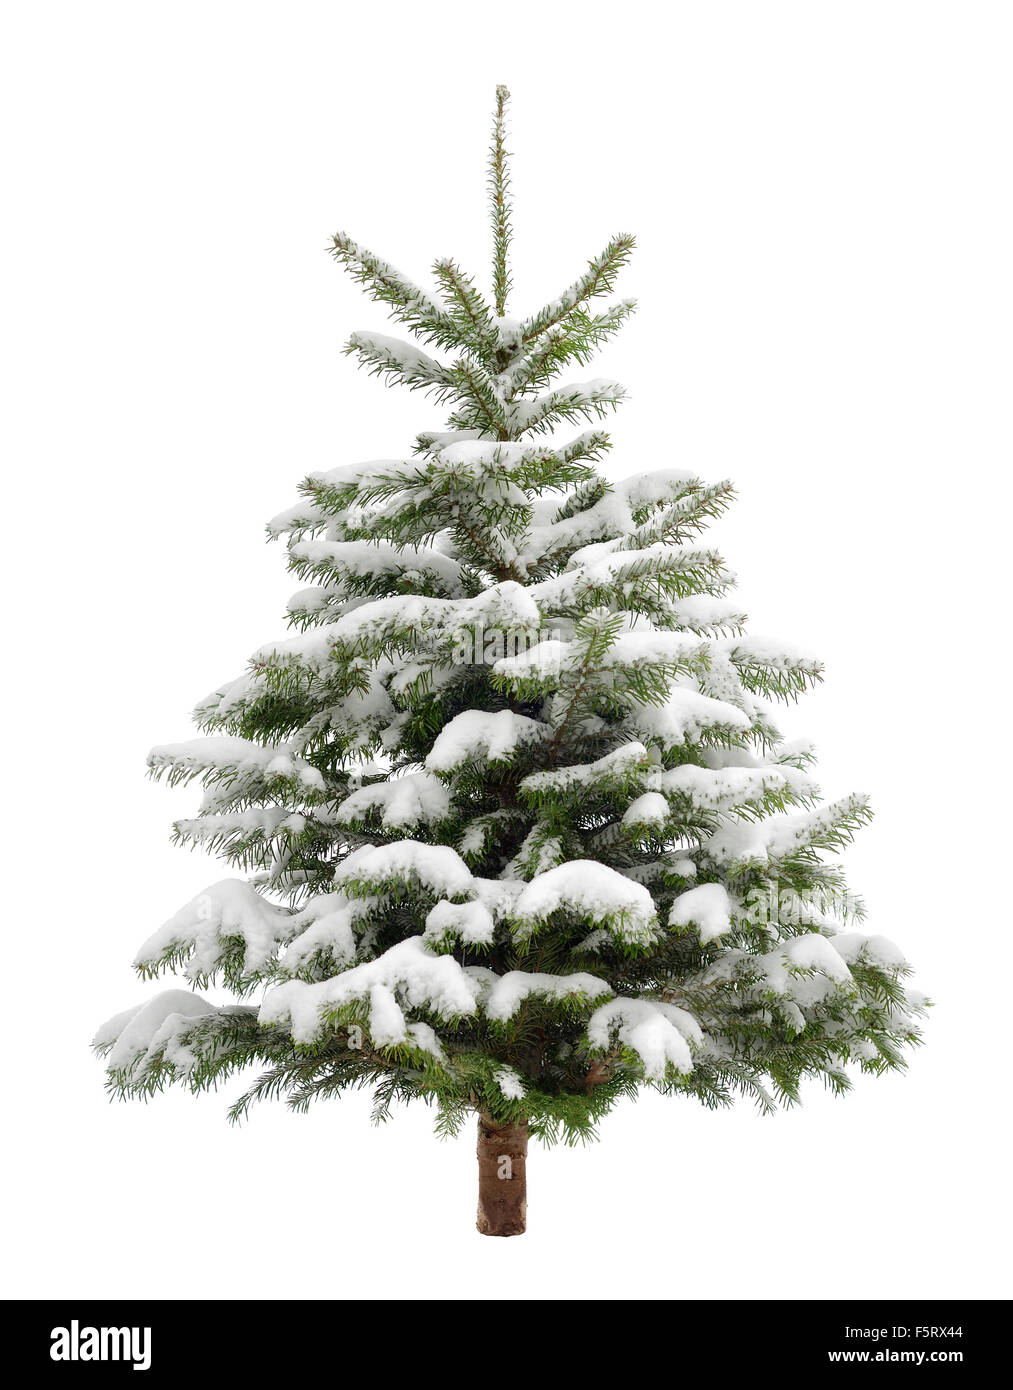 Parfait petit arbre de Noël dans la neige fraîche, isolé sur fond blanc, pur Banque D'Images